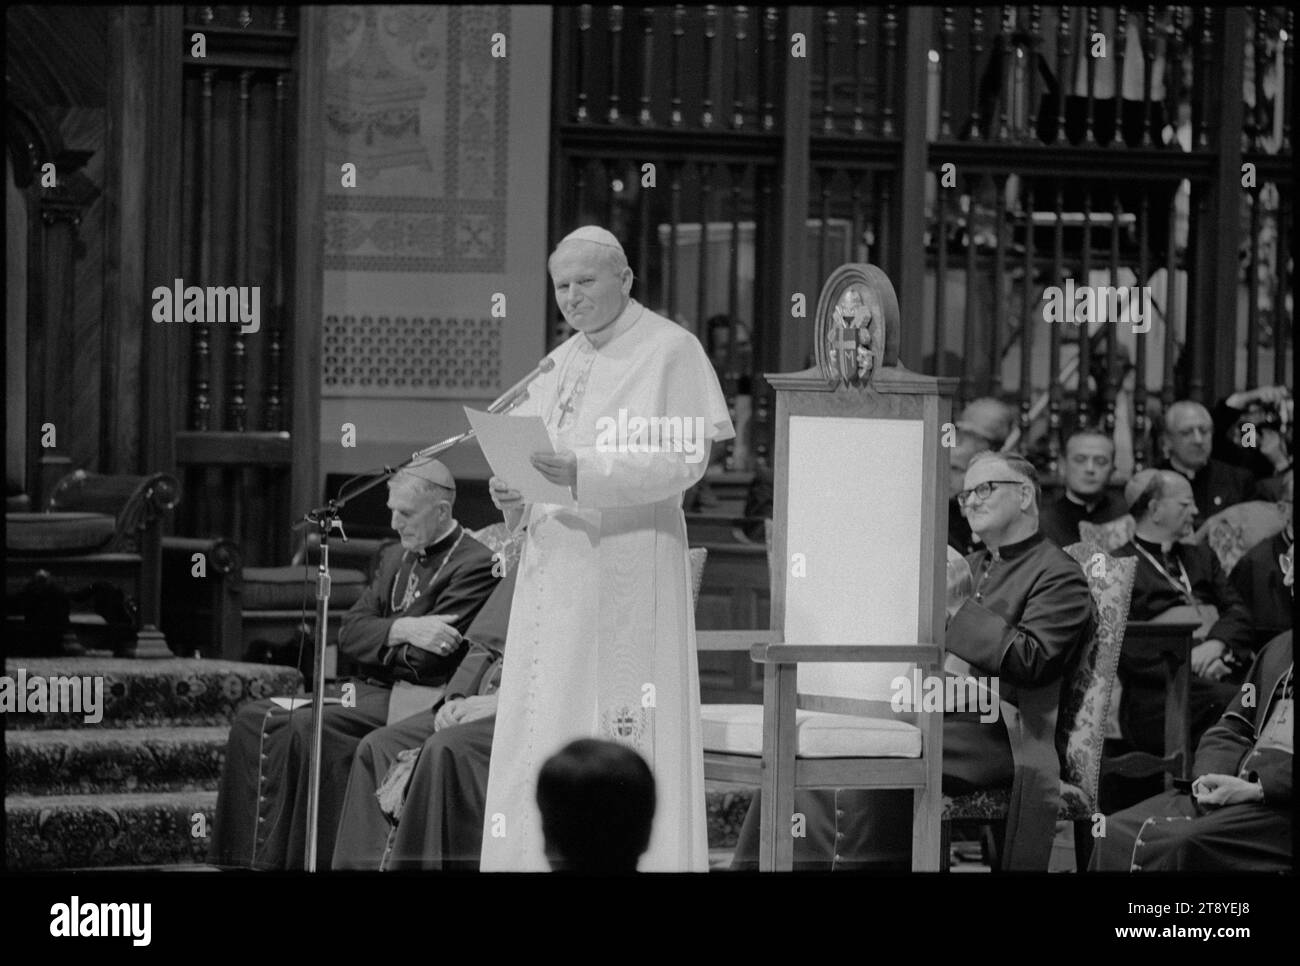 Papst Johannes Paul II. Sprach an einem Mikrofon in einer Kirche während seines Besuchs in den Vereinigten Staaten, Philadelphia, Pennsylvania, 10.4.1979. (Foto: Thomas O'Halloran/US News and World Report Magazine Collection. Stockfoto